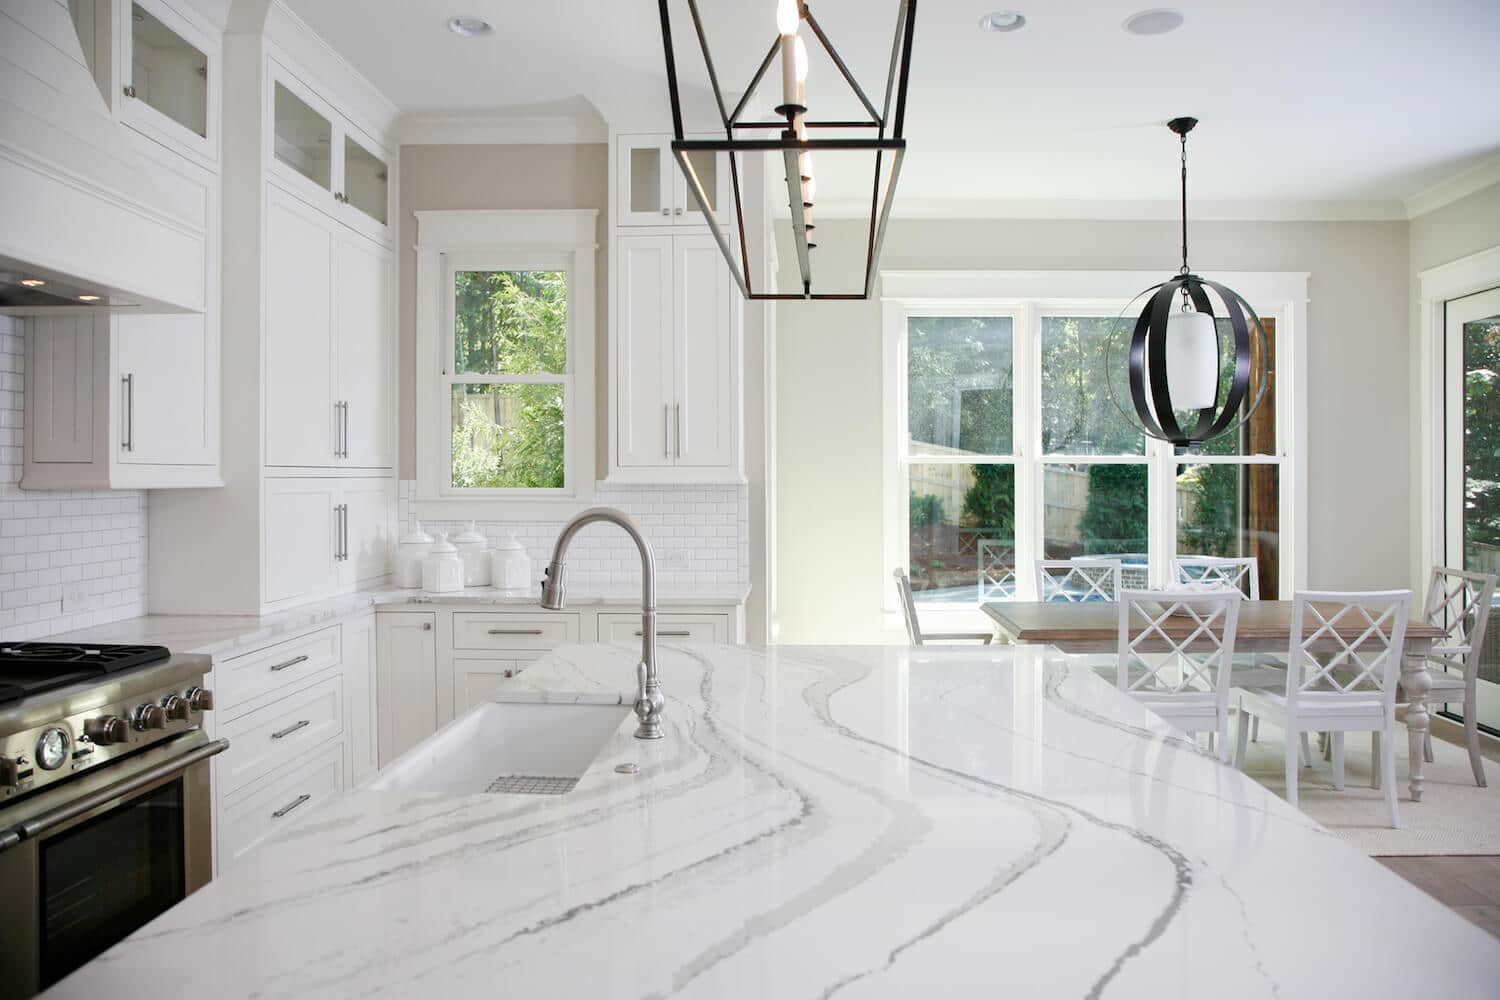 kitchen design with white quartz countertops